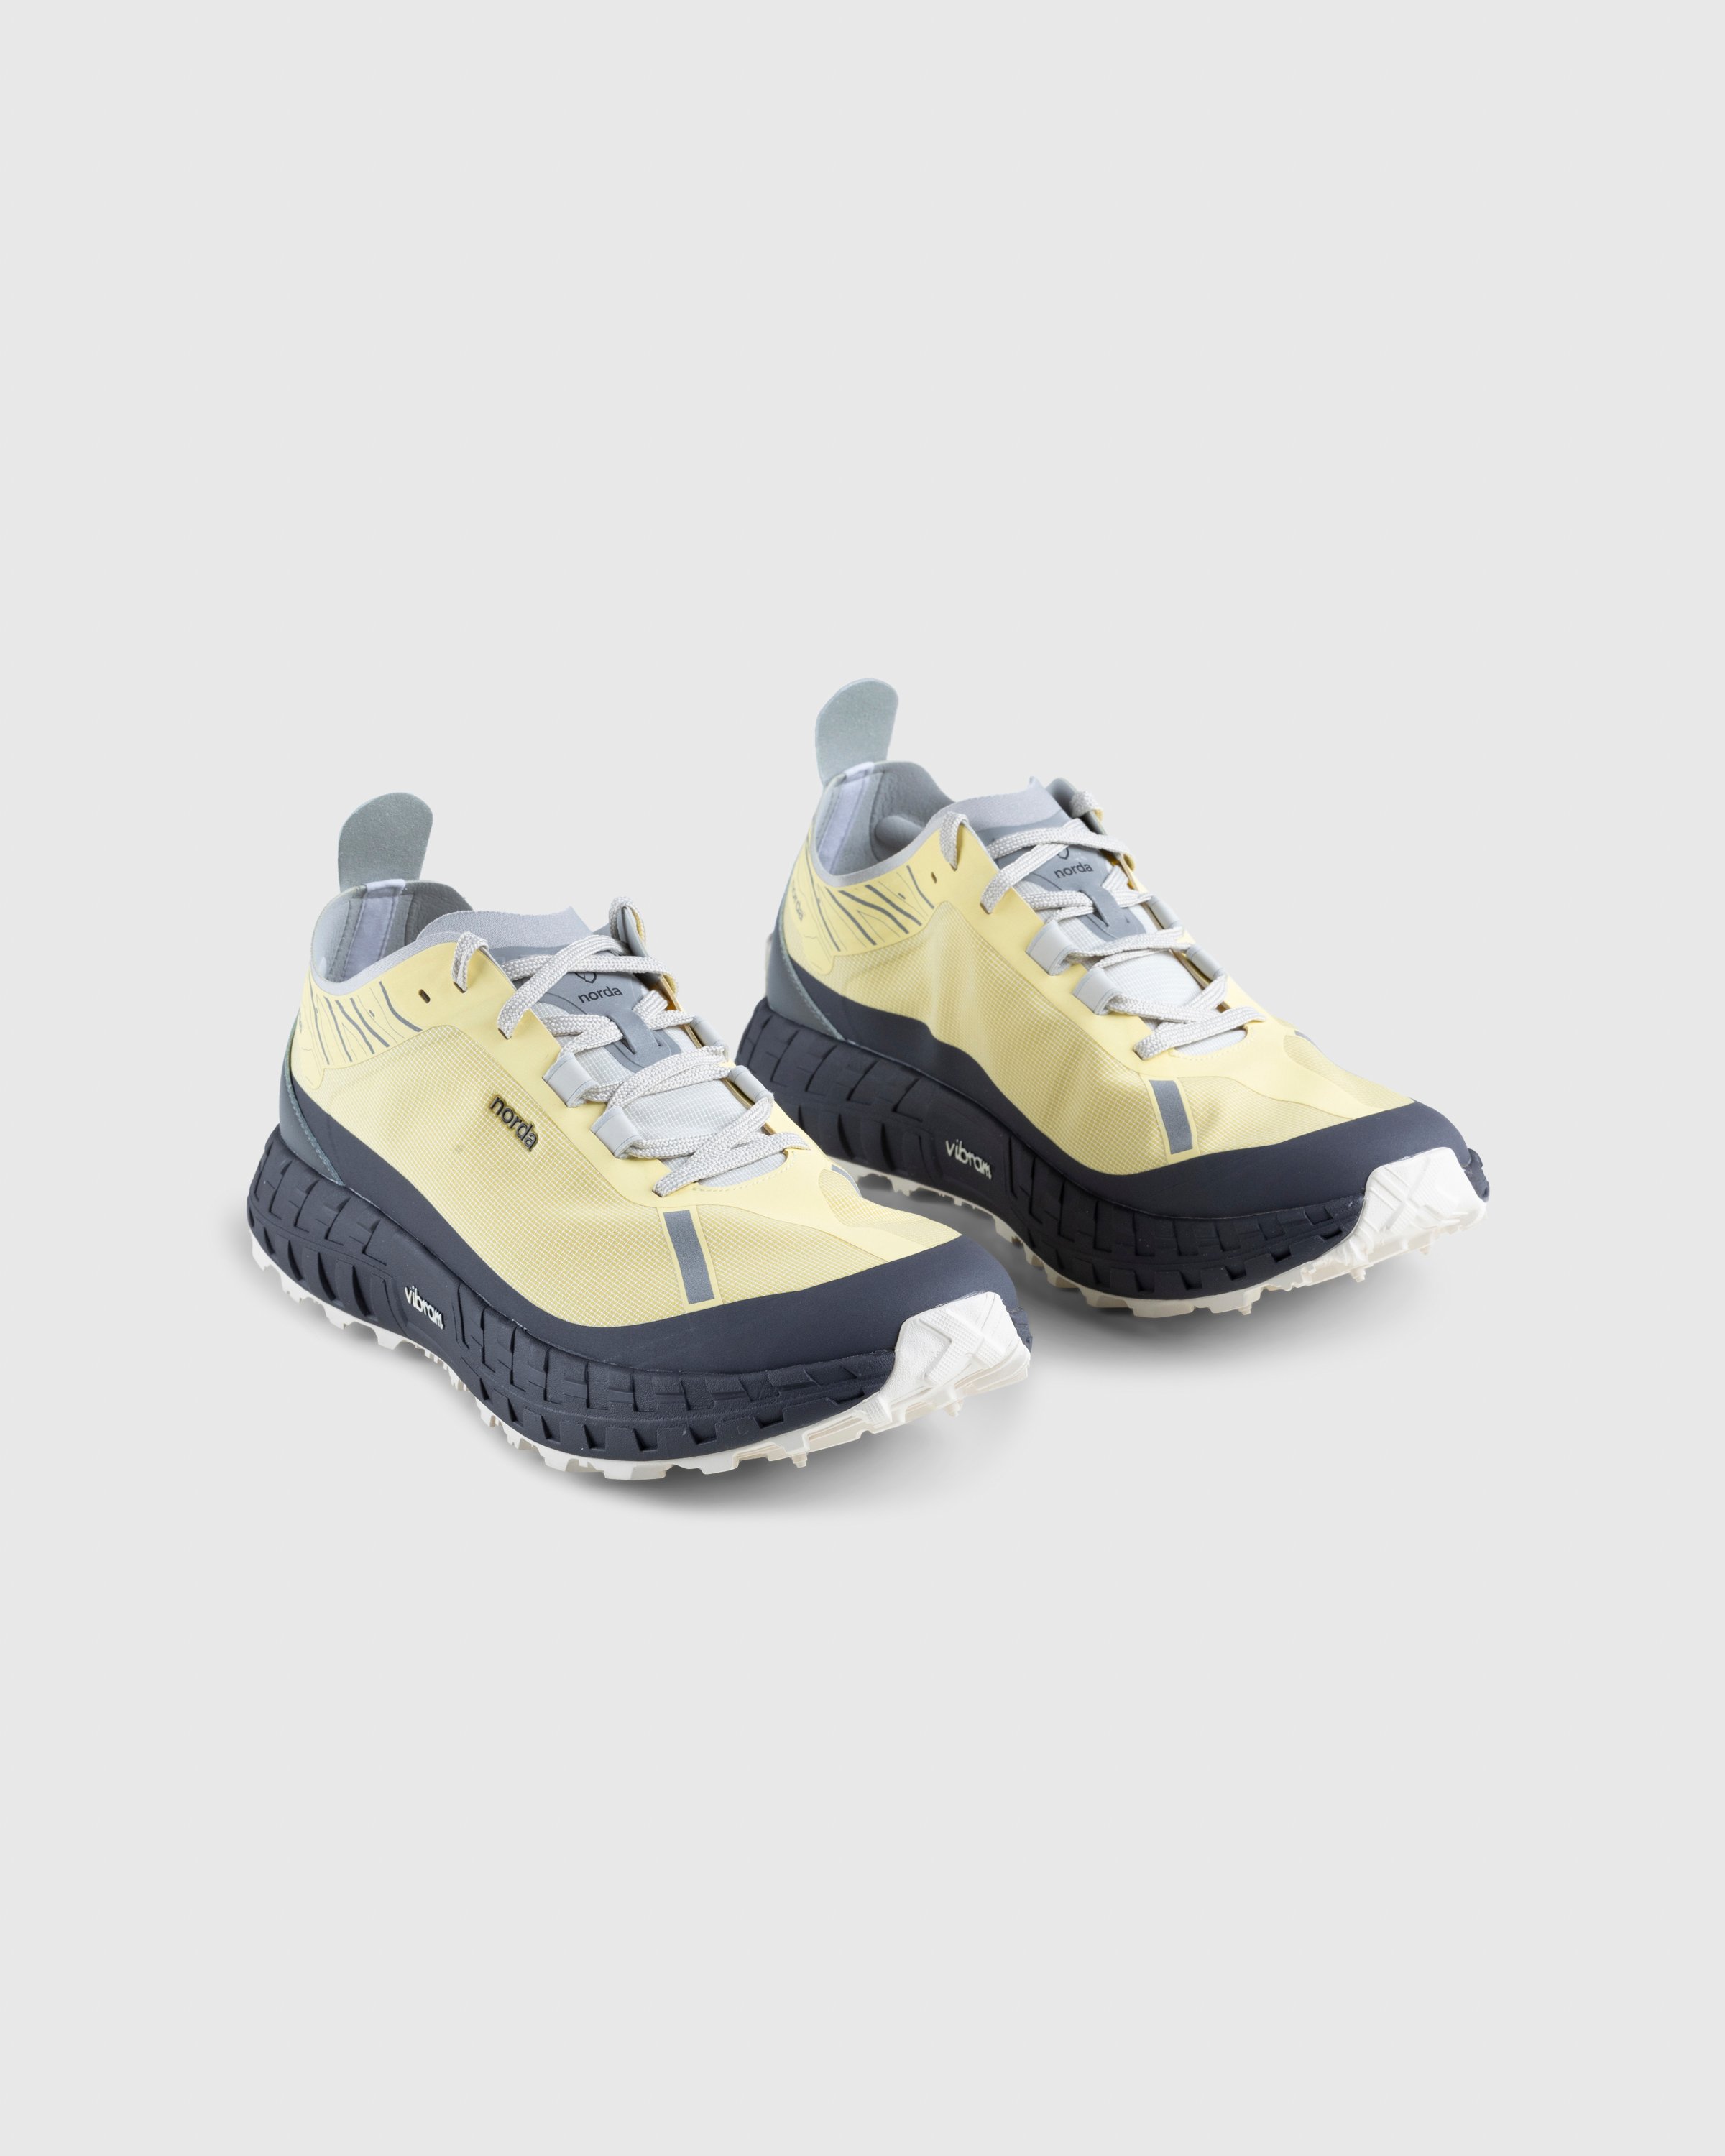 Norda - 001 M Lemon - Footwear - Yellow - Image 3